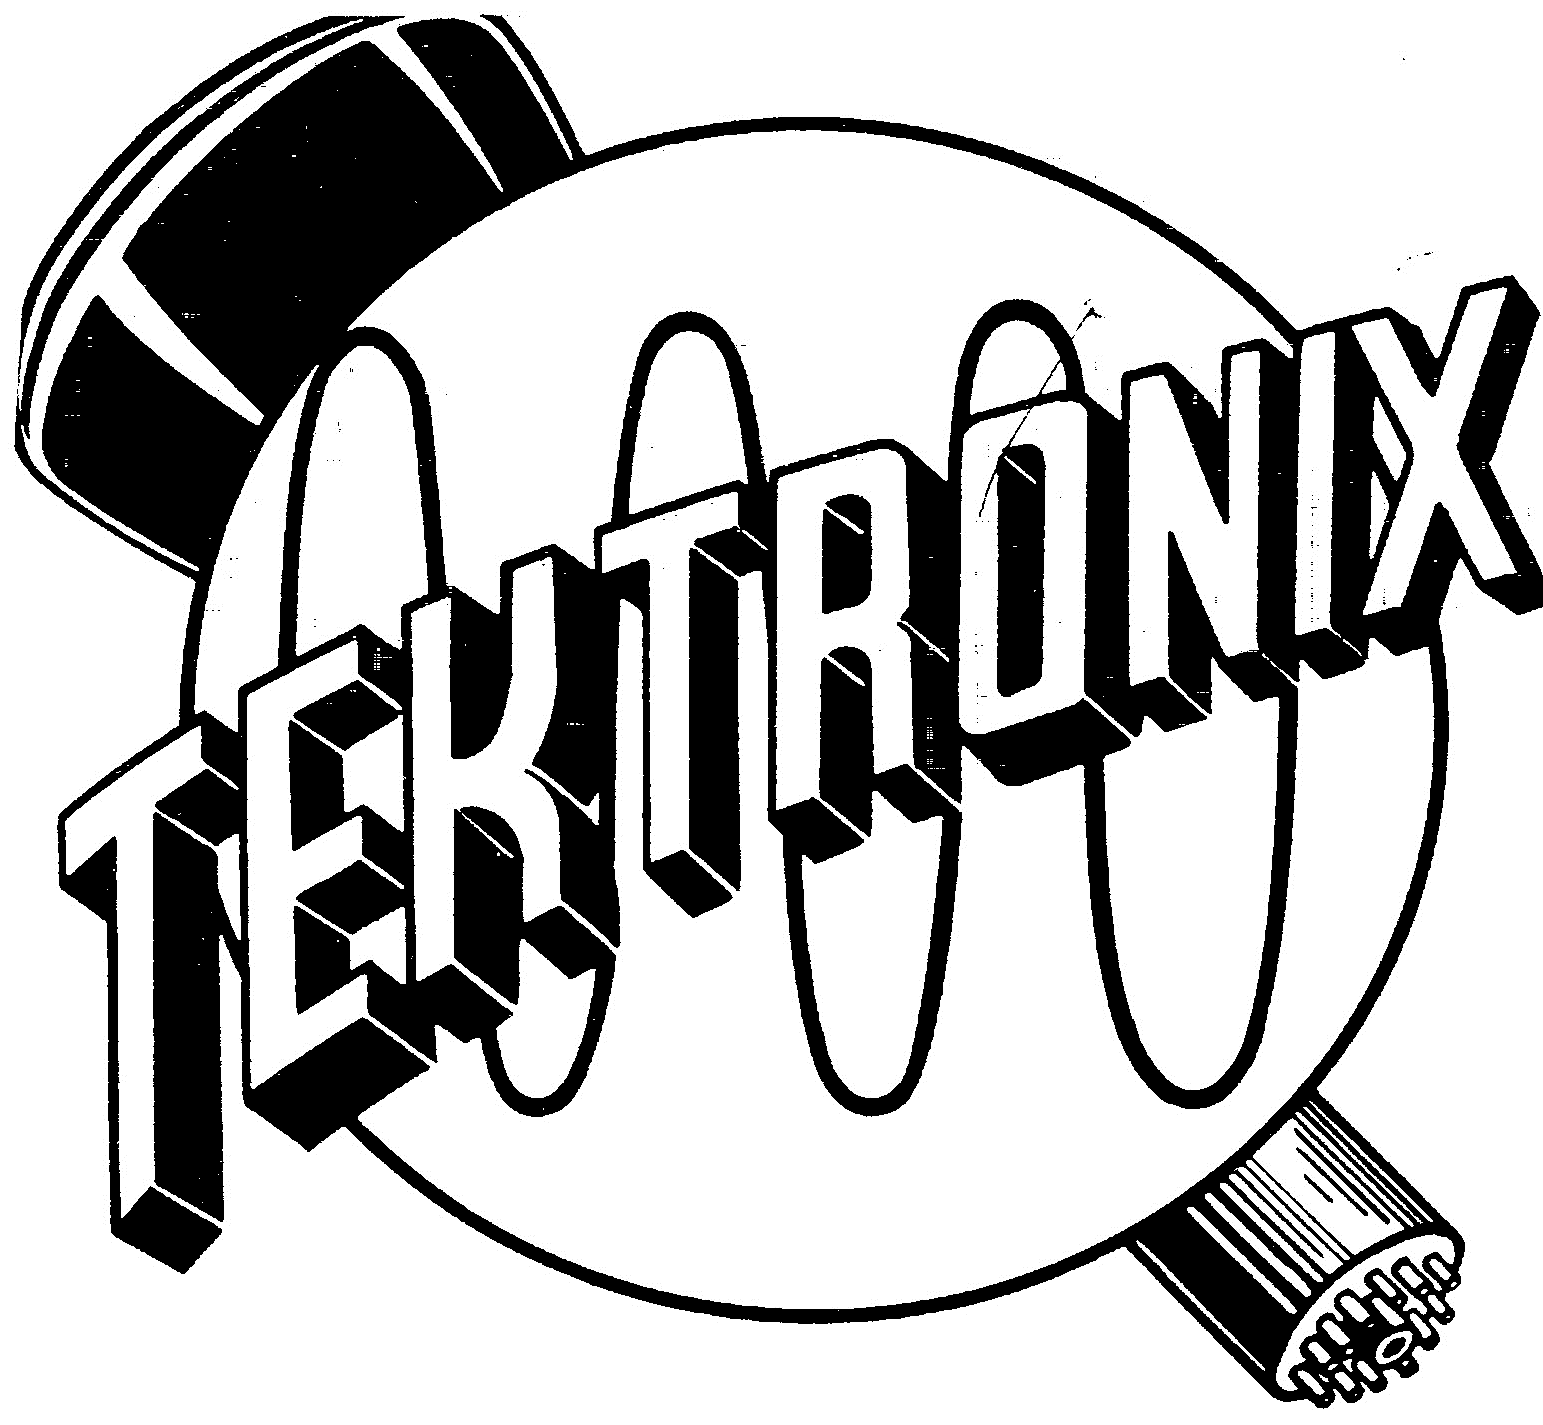 Логотип Tektronix